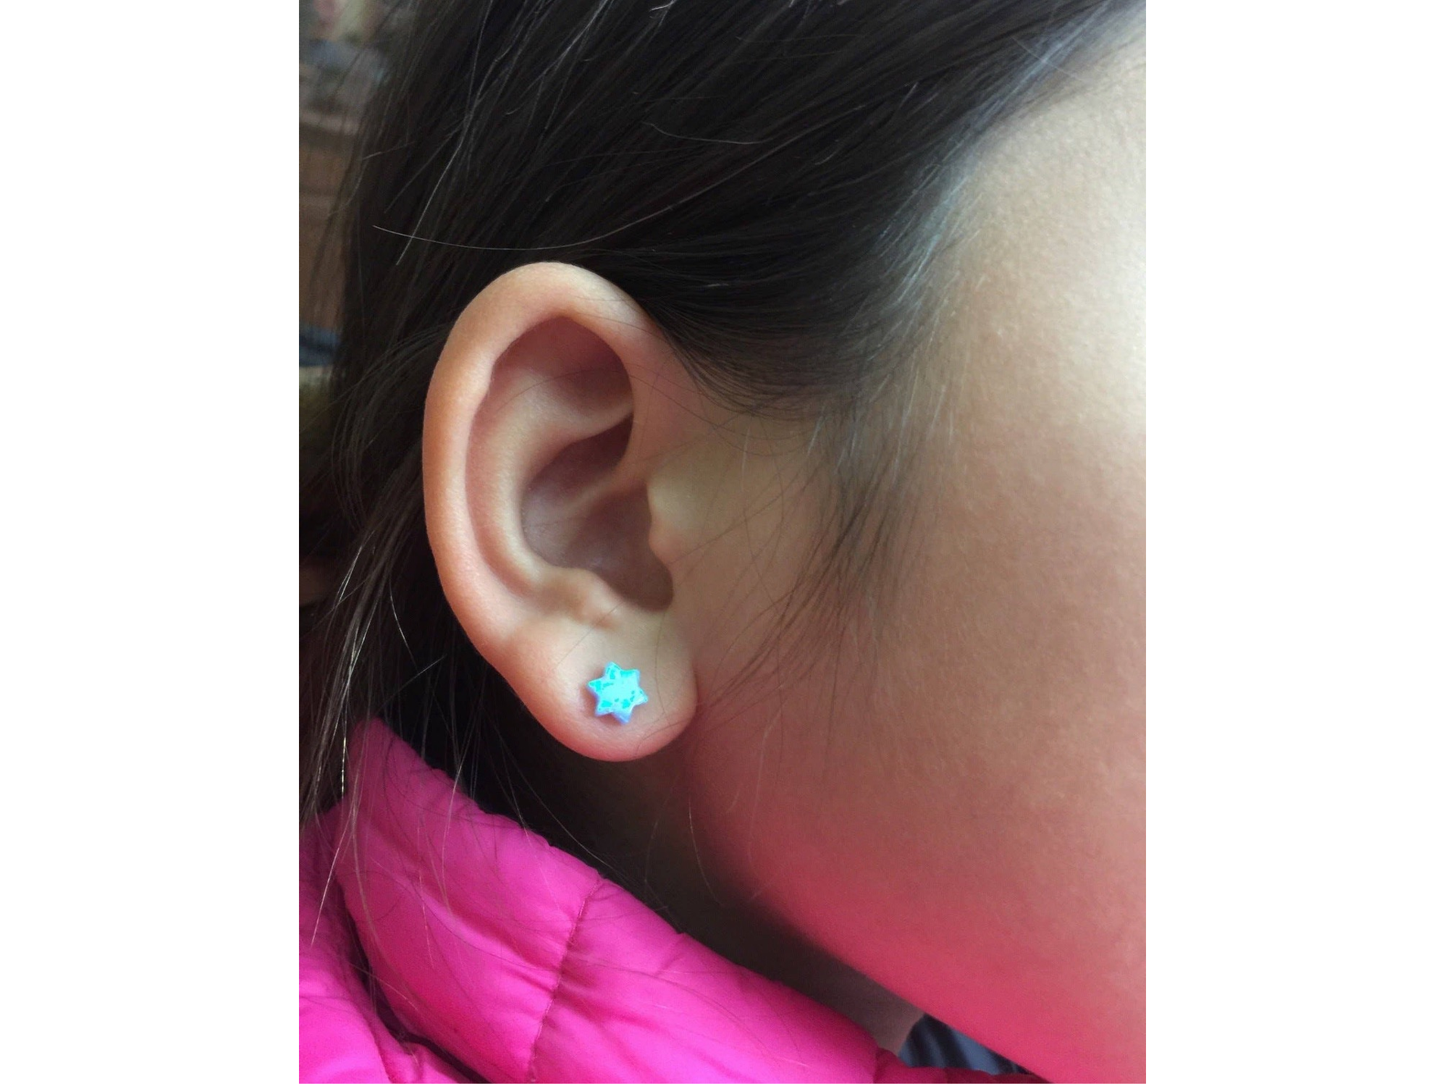 Blue Opal Star of David Earrings